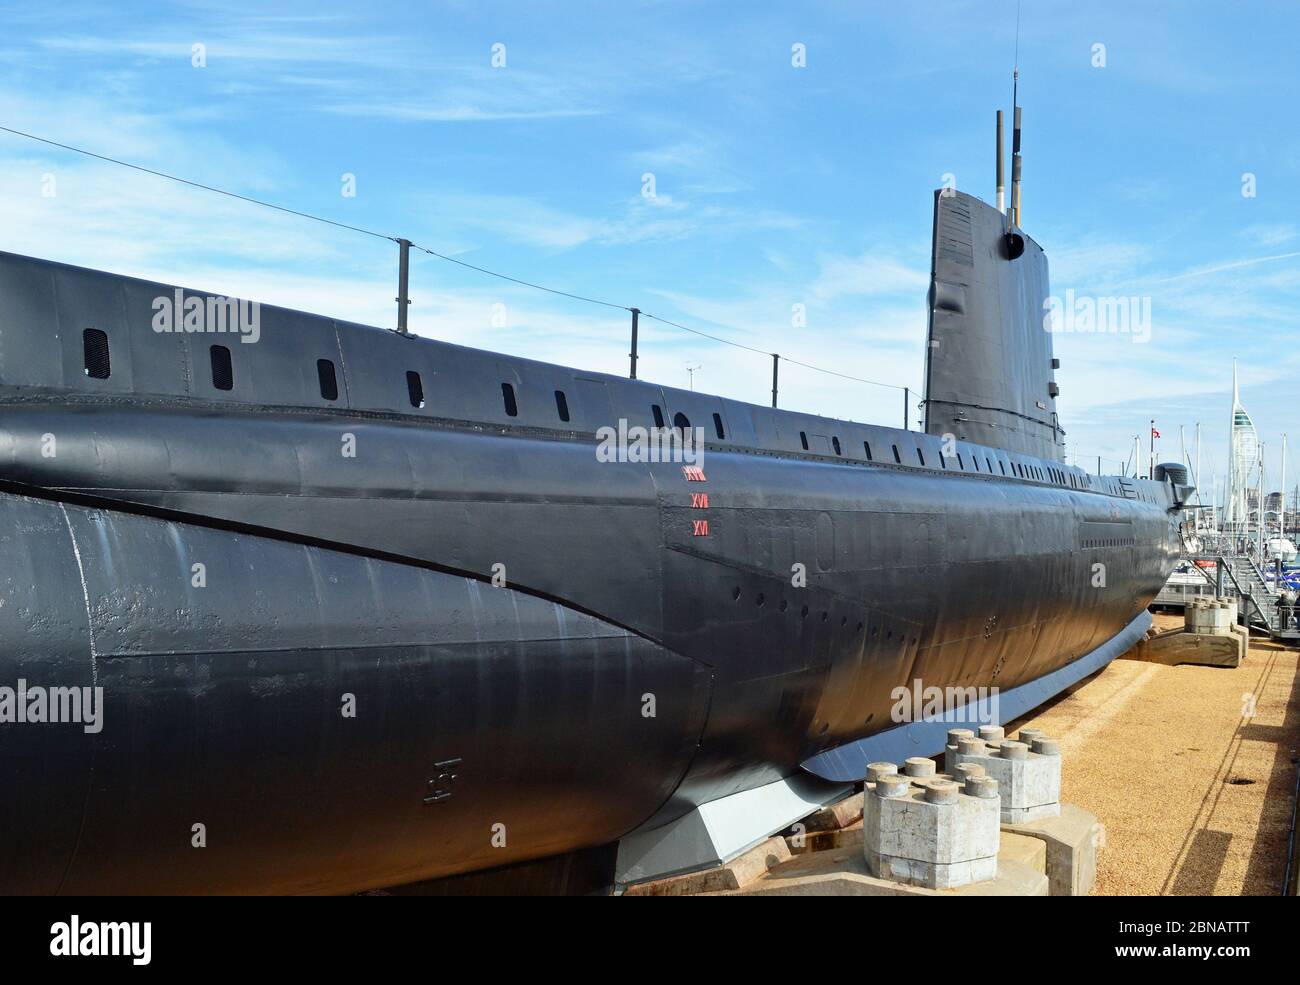 HMS Alliance au Royal Navy Submarine Museum, Gosport, Hampshire, Royaume-Uni. Fait partie du chantier naval historique de Portsmouth. Banque D'Images